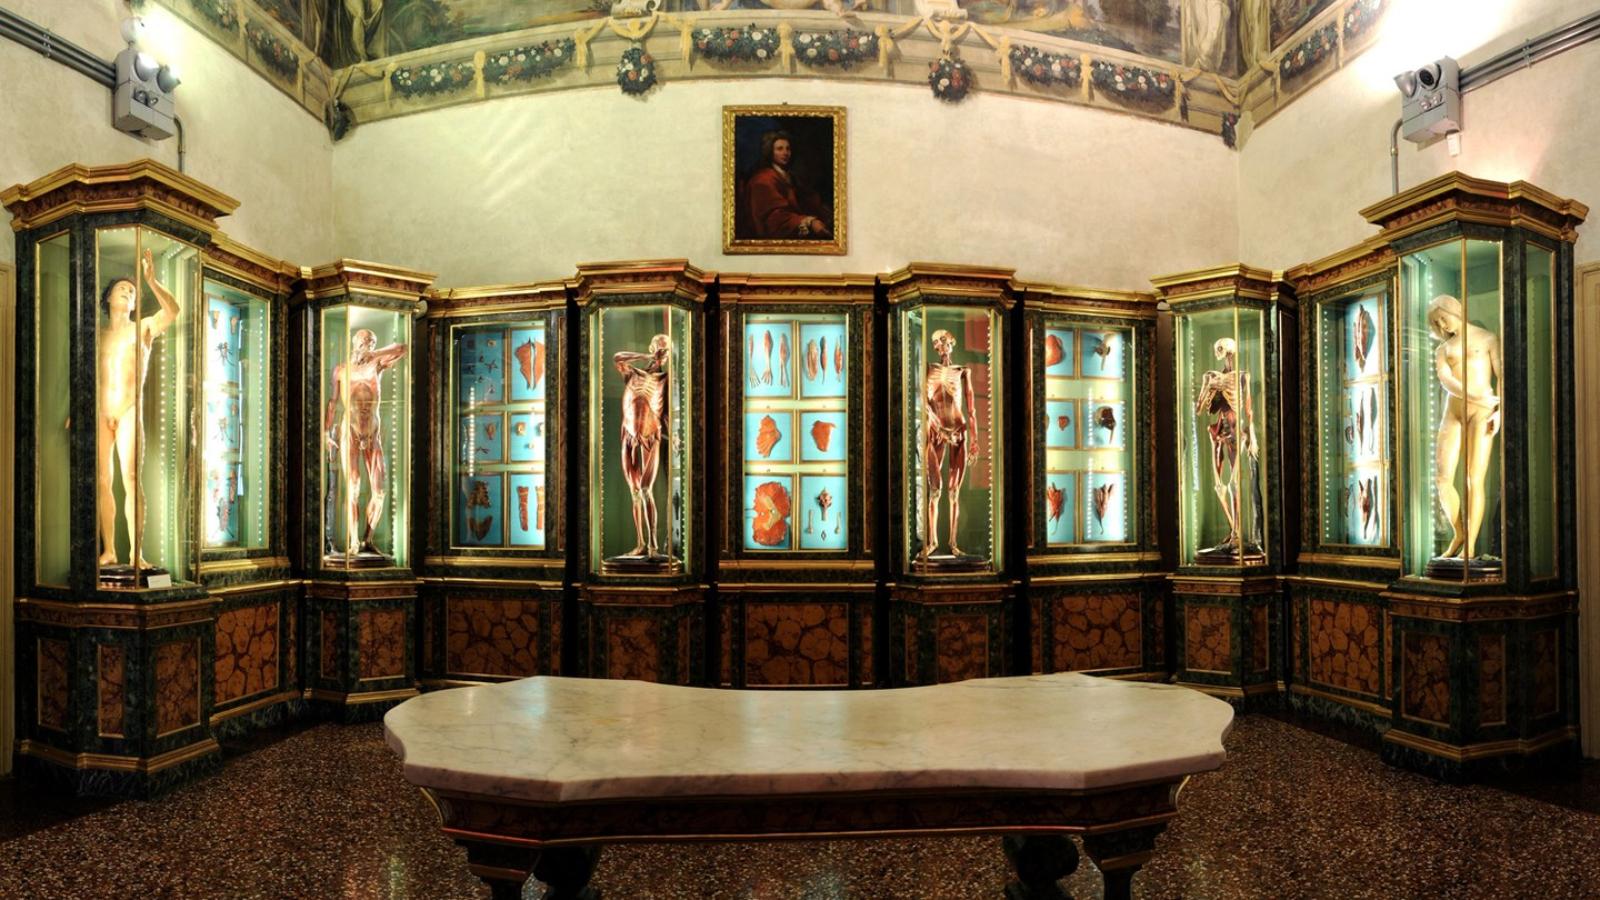 Sala delle Cere Anatomiche, Palazzo Poggi / Anatomical Wax Room, Palazzo Poggi